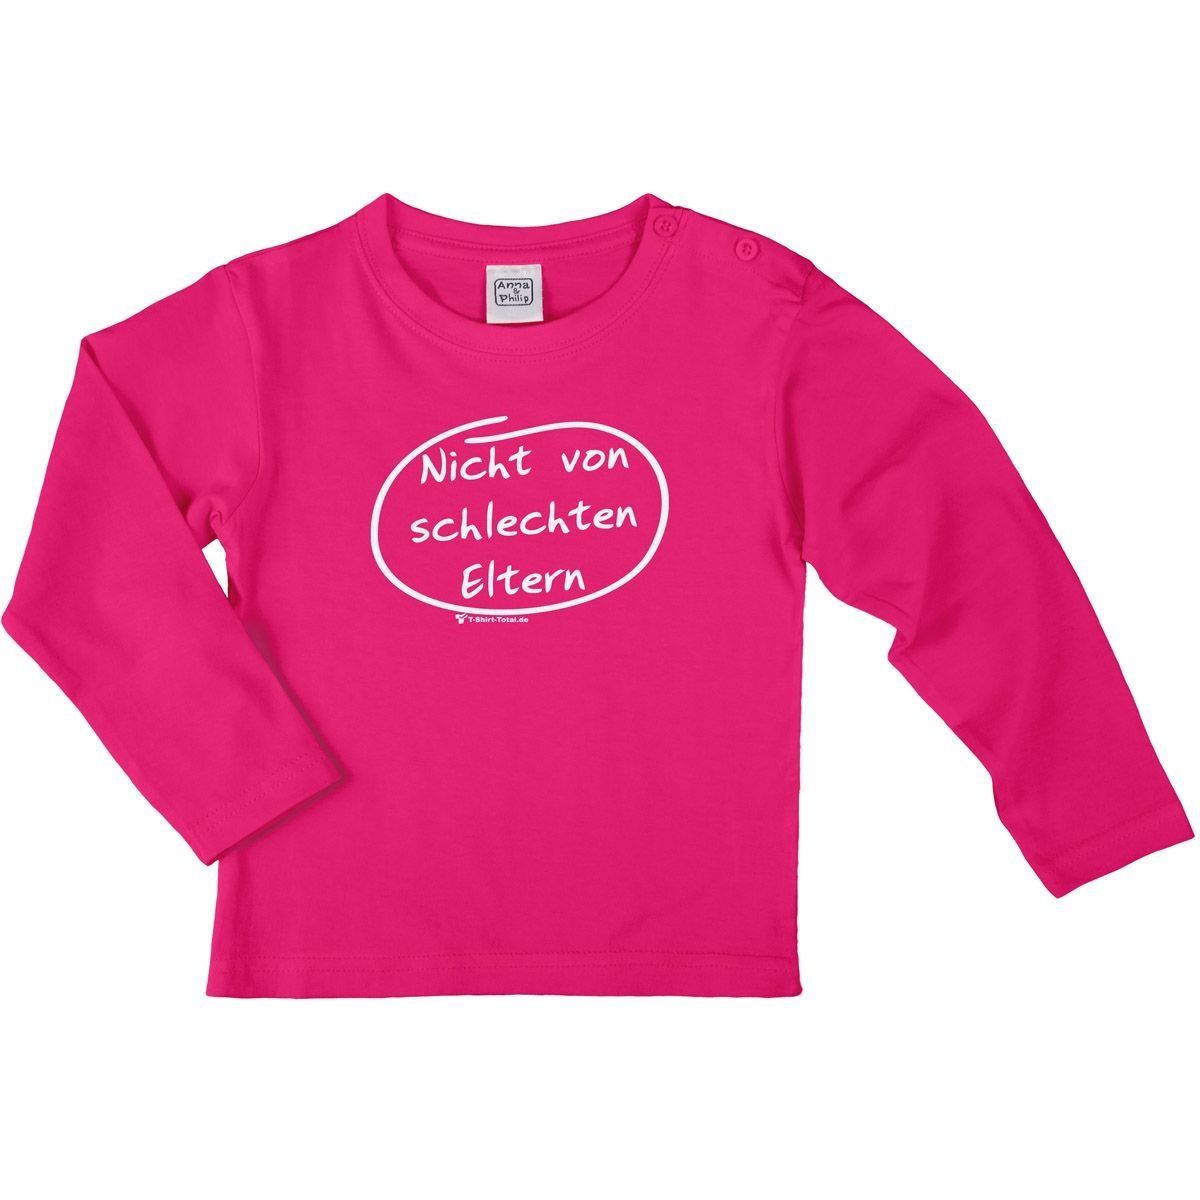 Nicht von schlechten Eltern Kinder Langarm Shirt pink 92